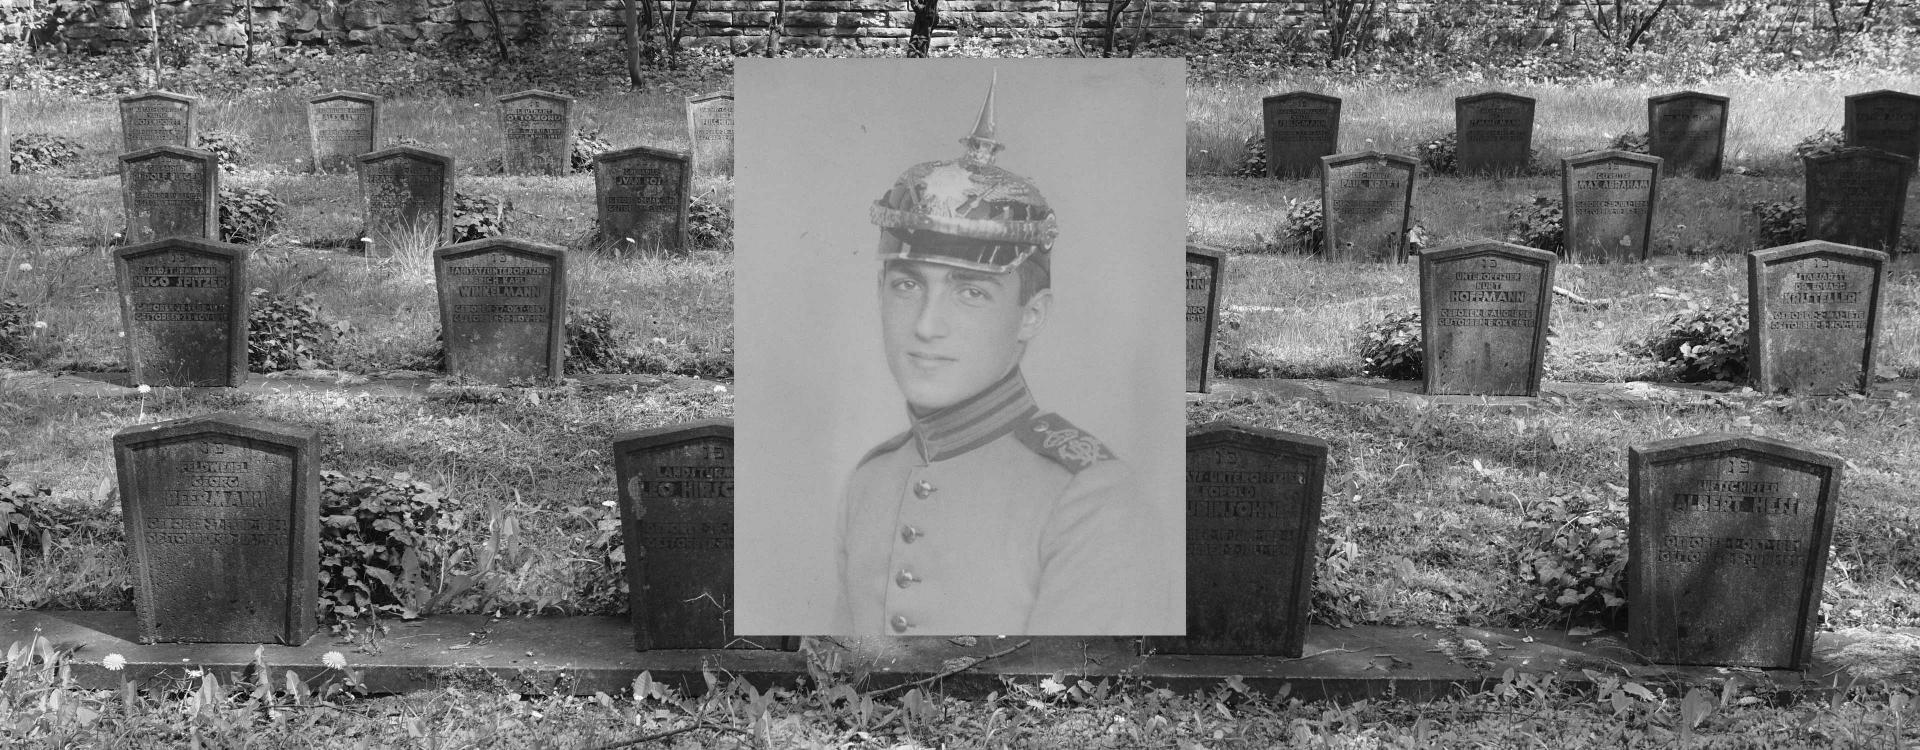 Grabsteine auf einem Friedhof, darüber die Zeichnung eines Soldaten.